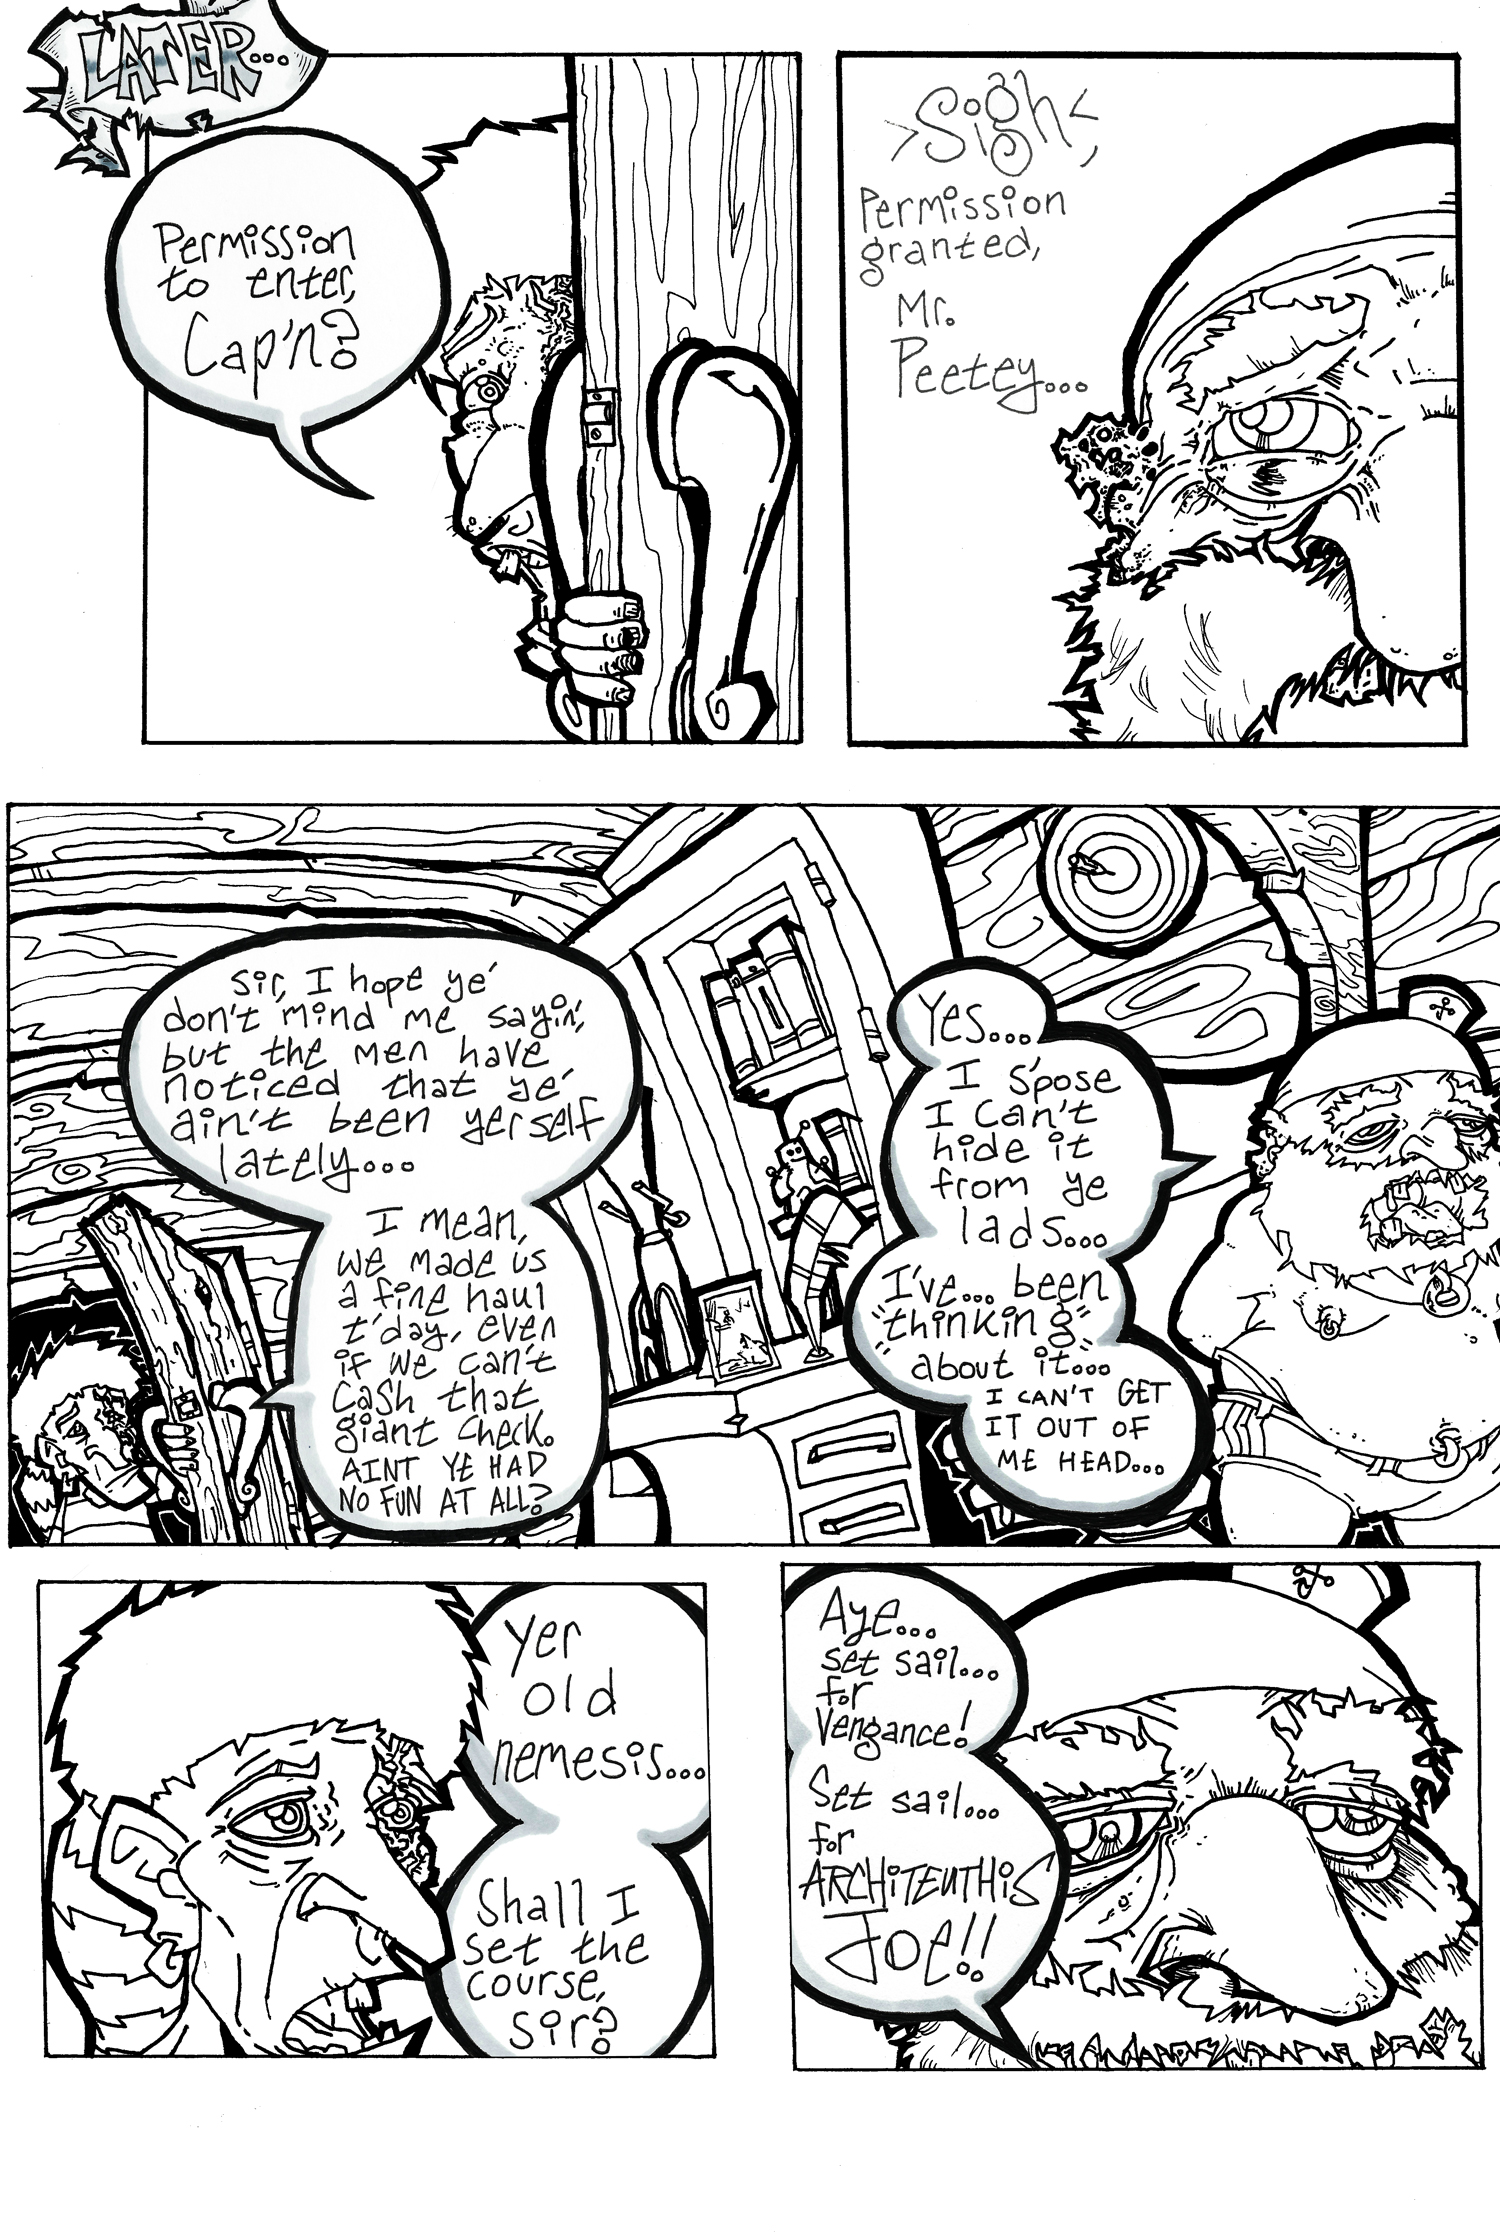 ish2 3 fantastic crap comics archieteuthis joe cryptozoology horror fantastic crap comics